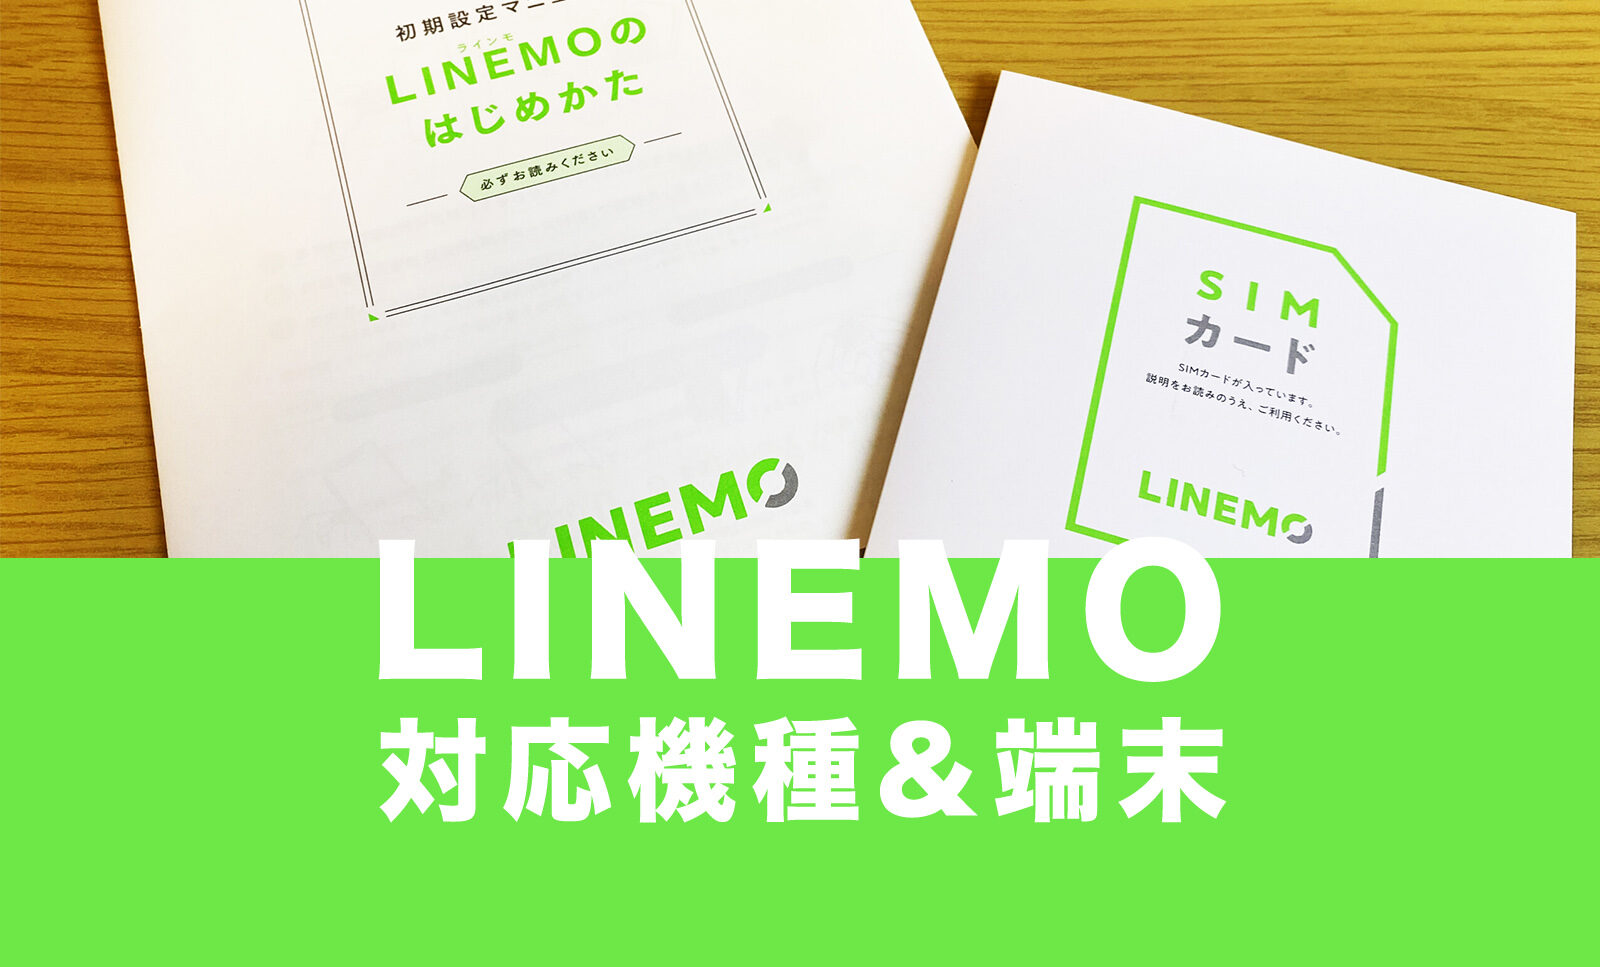 LINEMO(ラインモ)の対応機種&対応スマホ端末を解説！のサムネイル画像